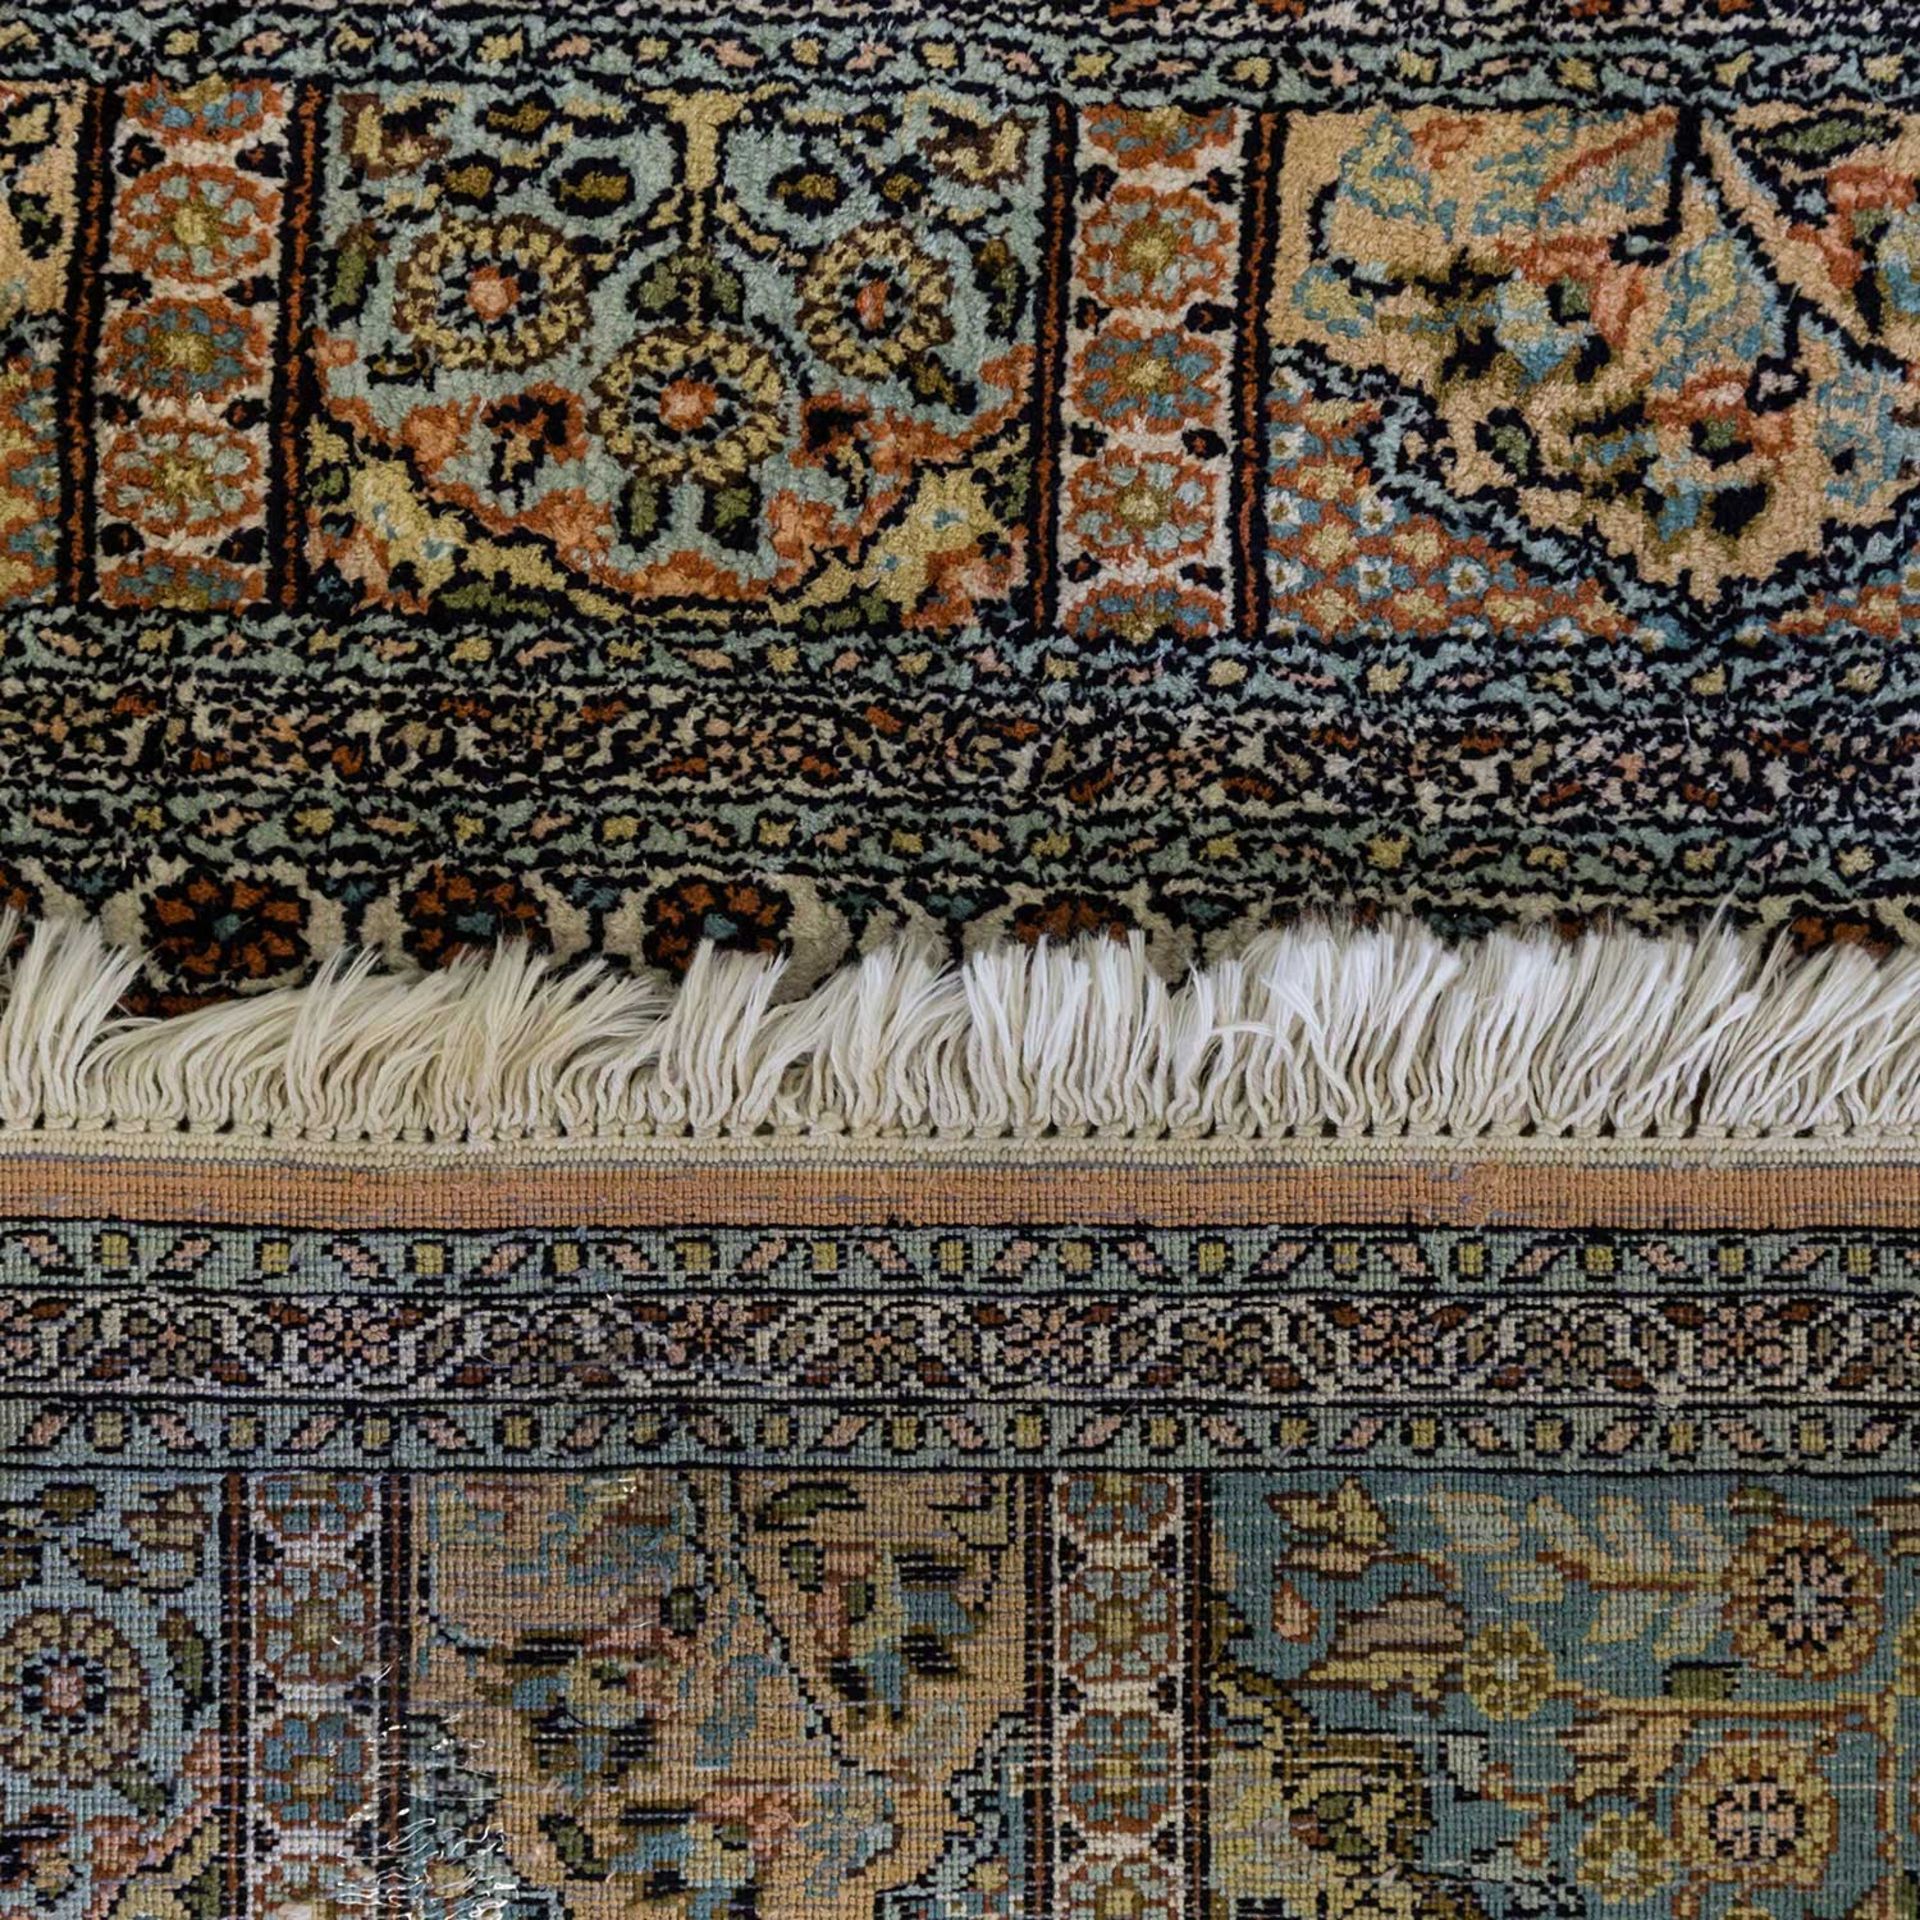 Orientteppich aus Kaschmirseide. 20. Jh., ca. 182x123 cm das Innenfeld und die Bordüre sind - Bild 2 aus 2